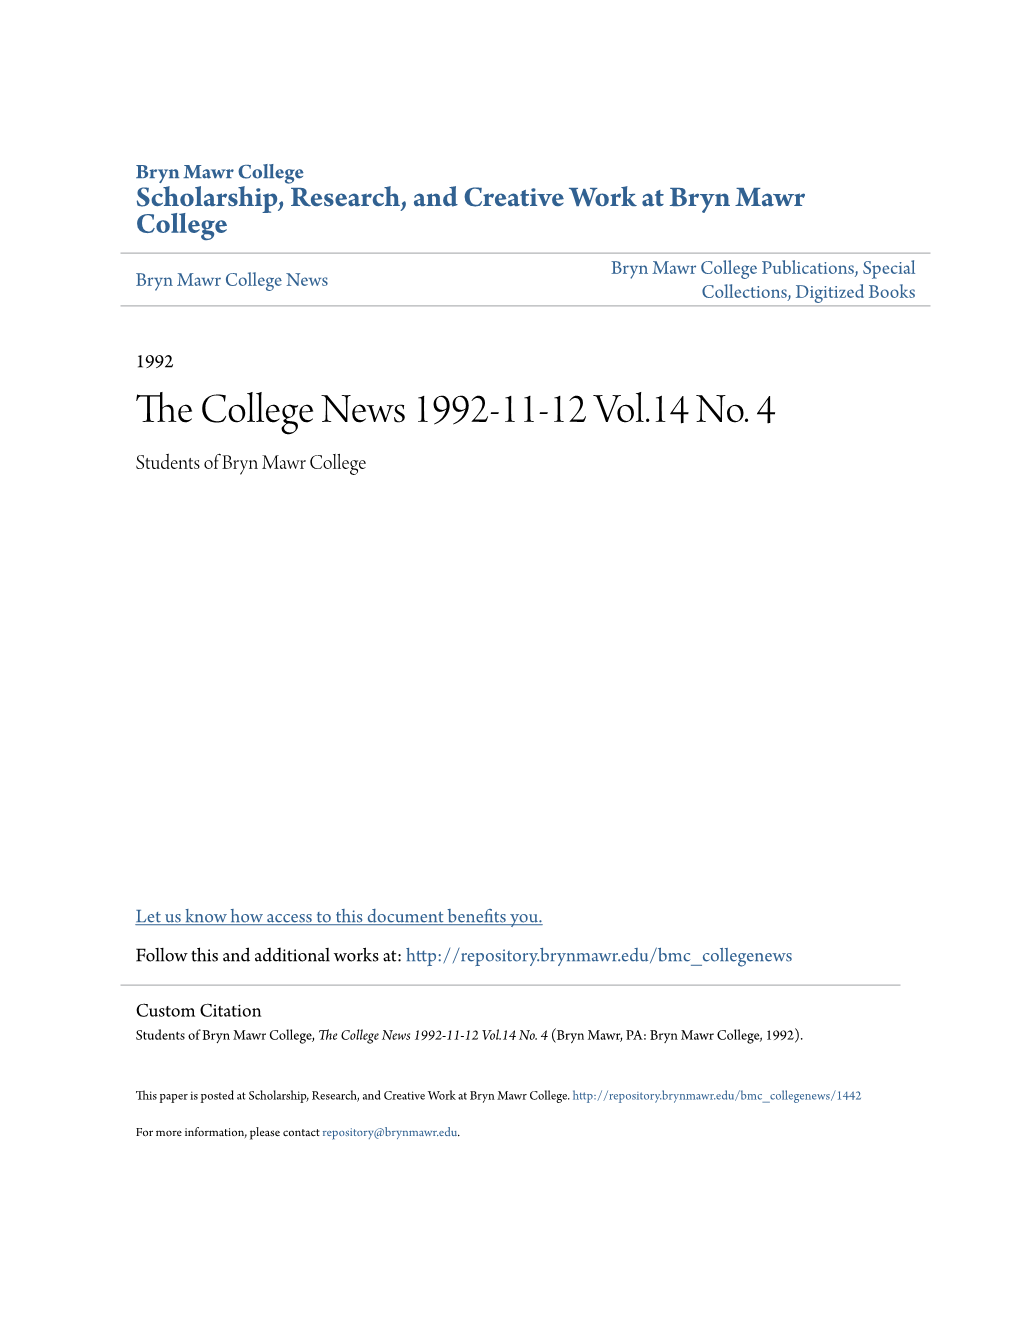 The College News 1992-11-12 Vol.14 No. 4 (Bryn Mawr, PA: Bryn Mawr College, 1992)